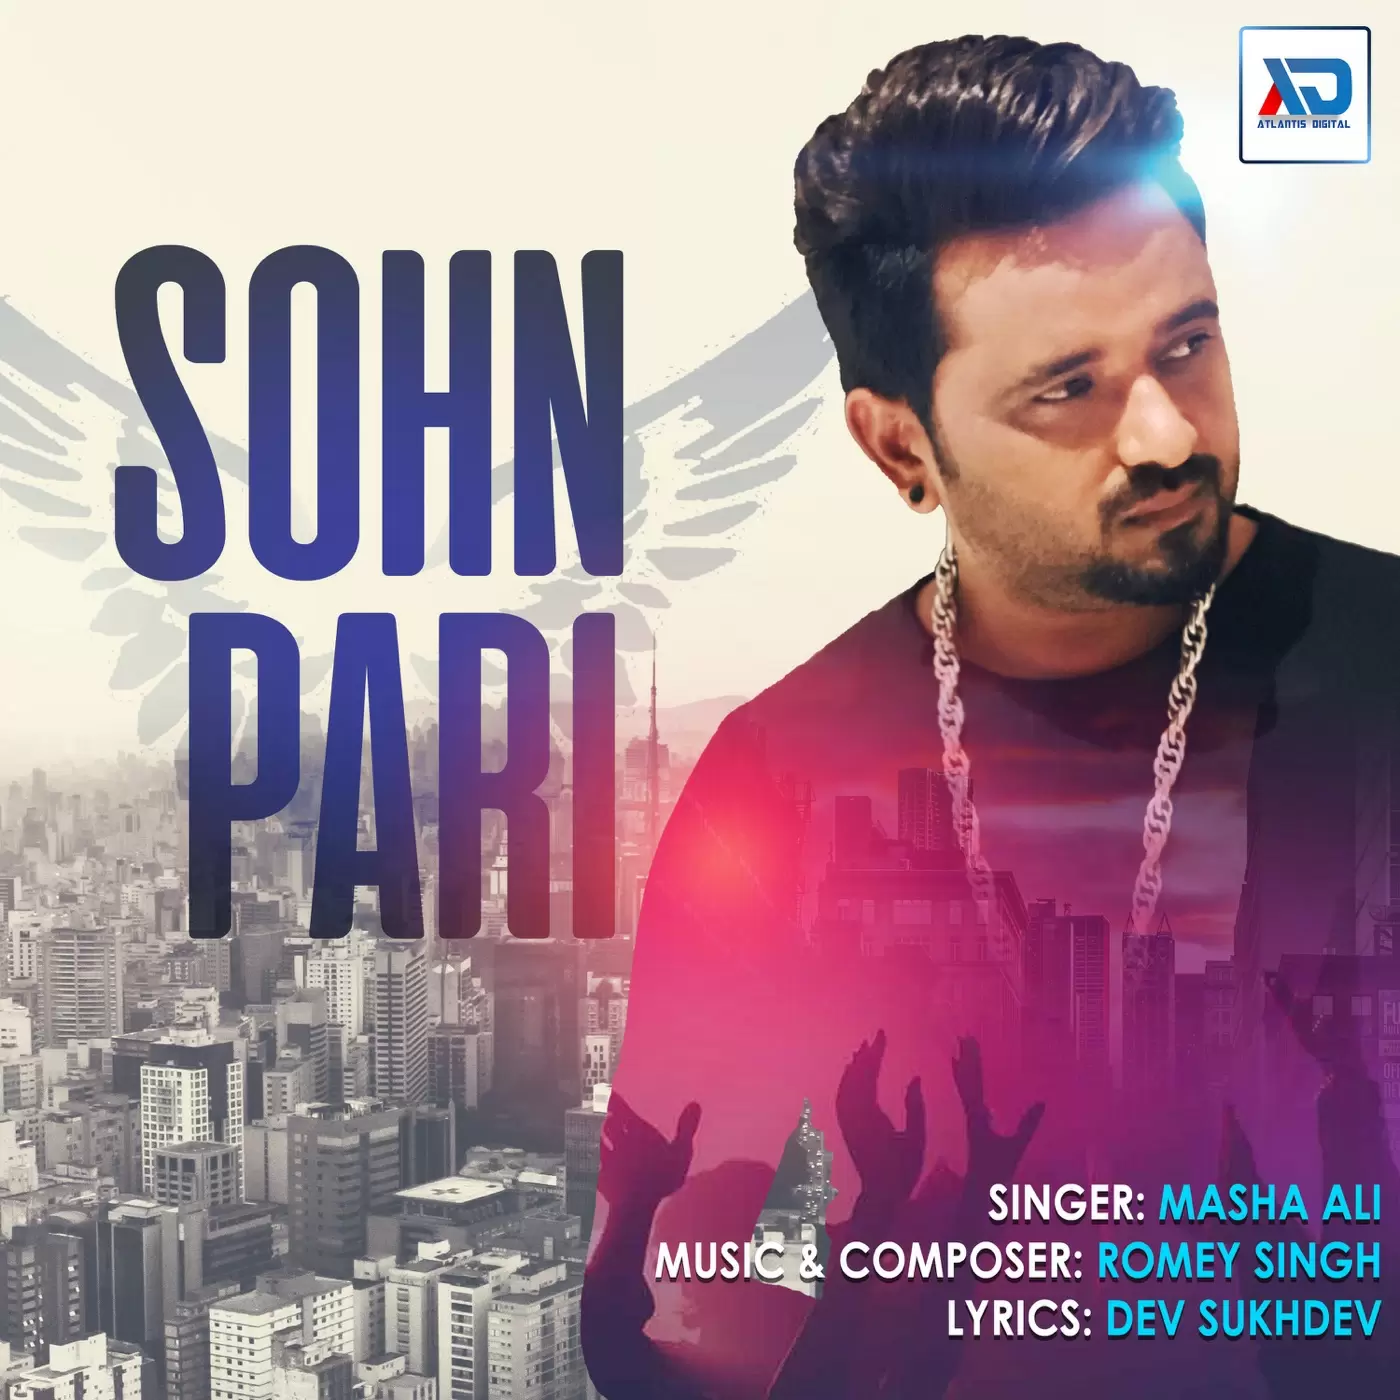 Sohn Pari Masha Ali Mp3 Download Song - Mr-Punjab